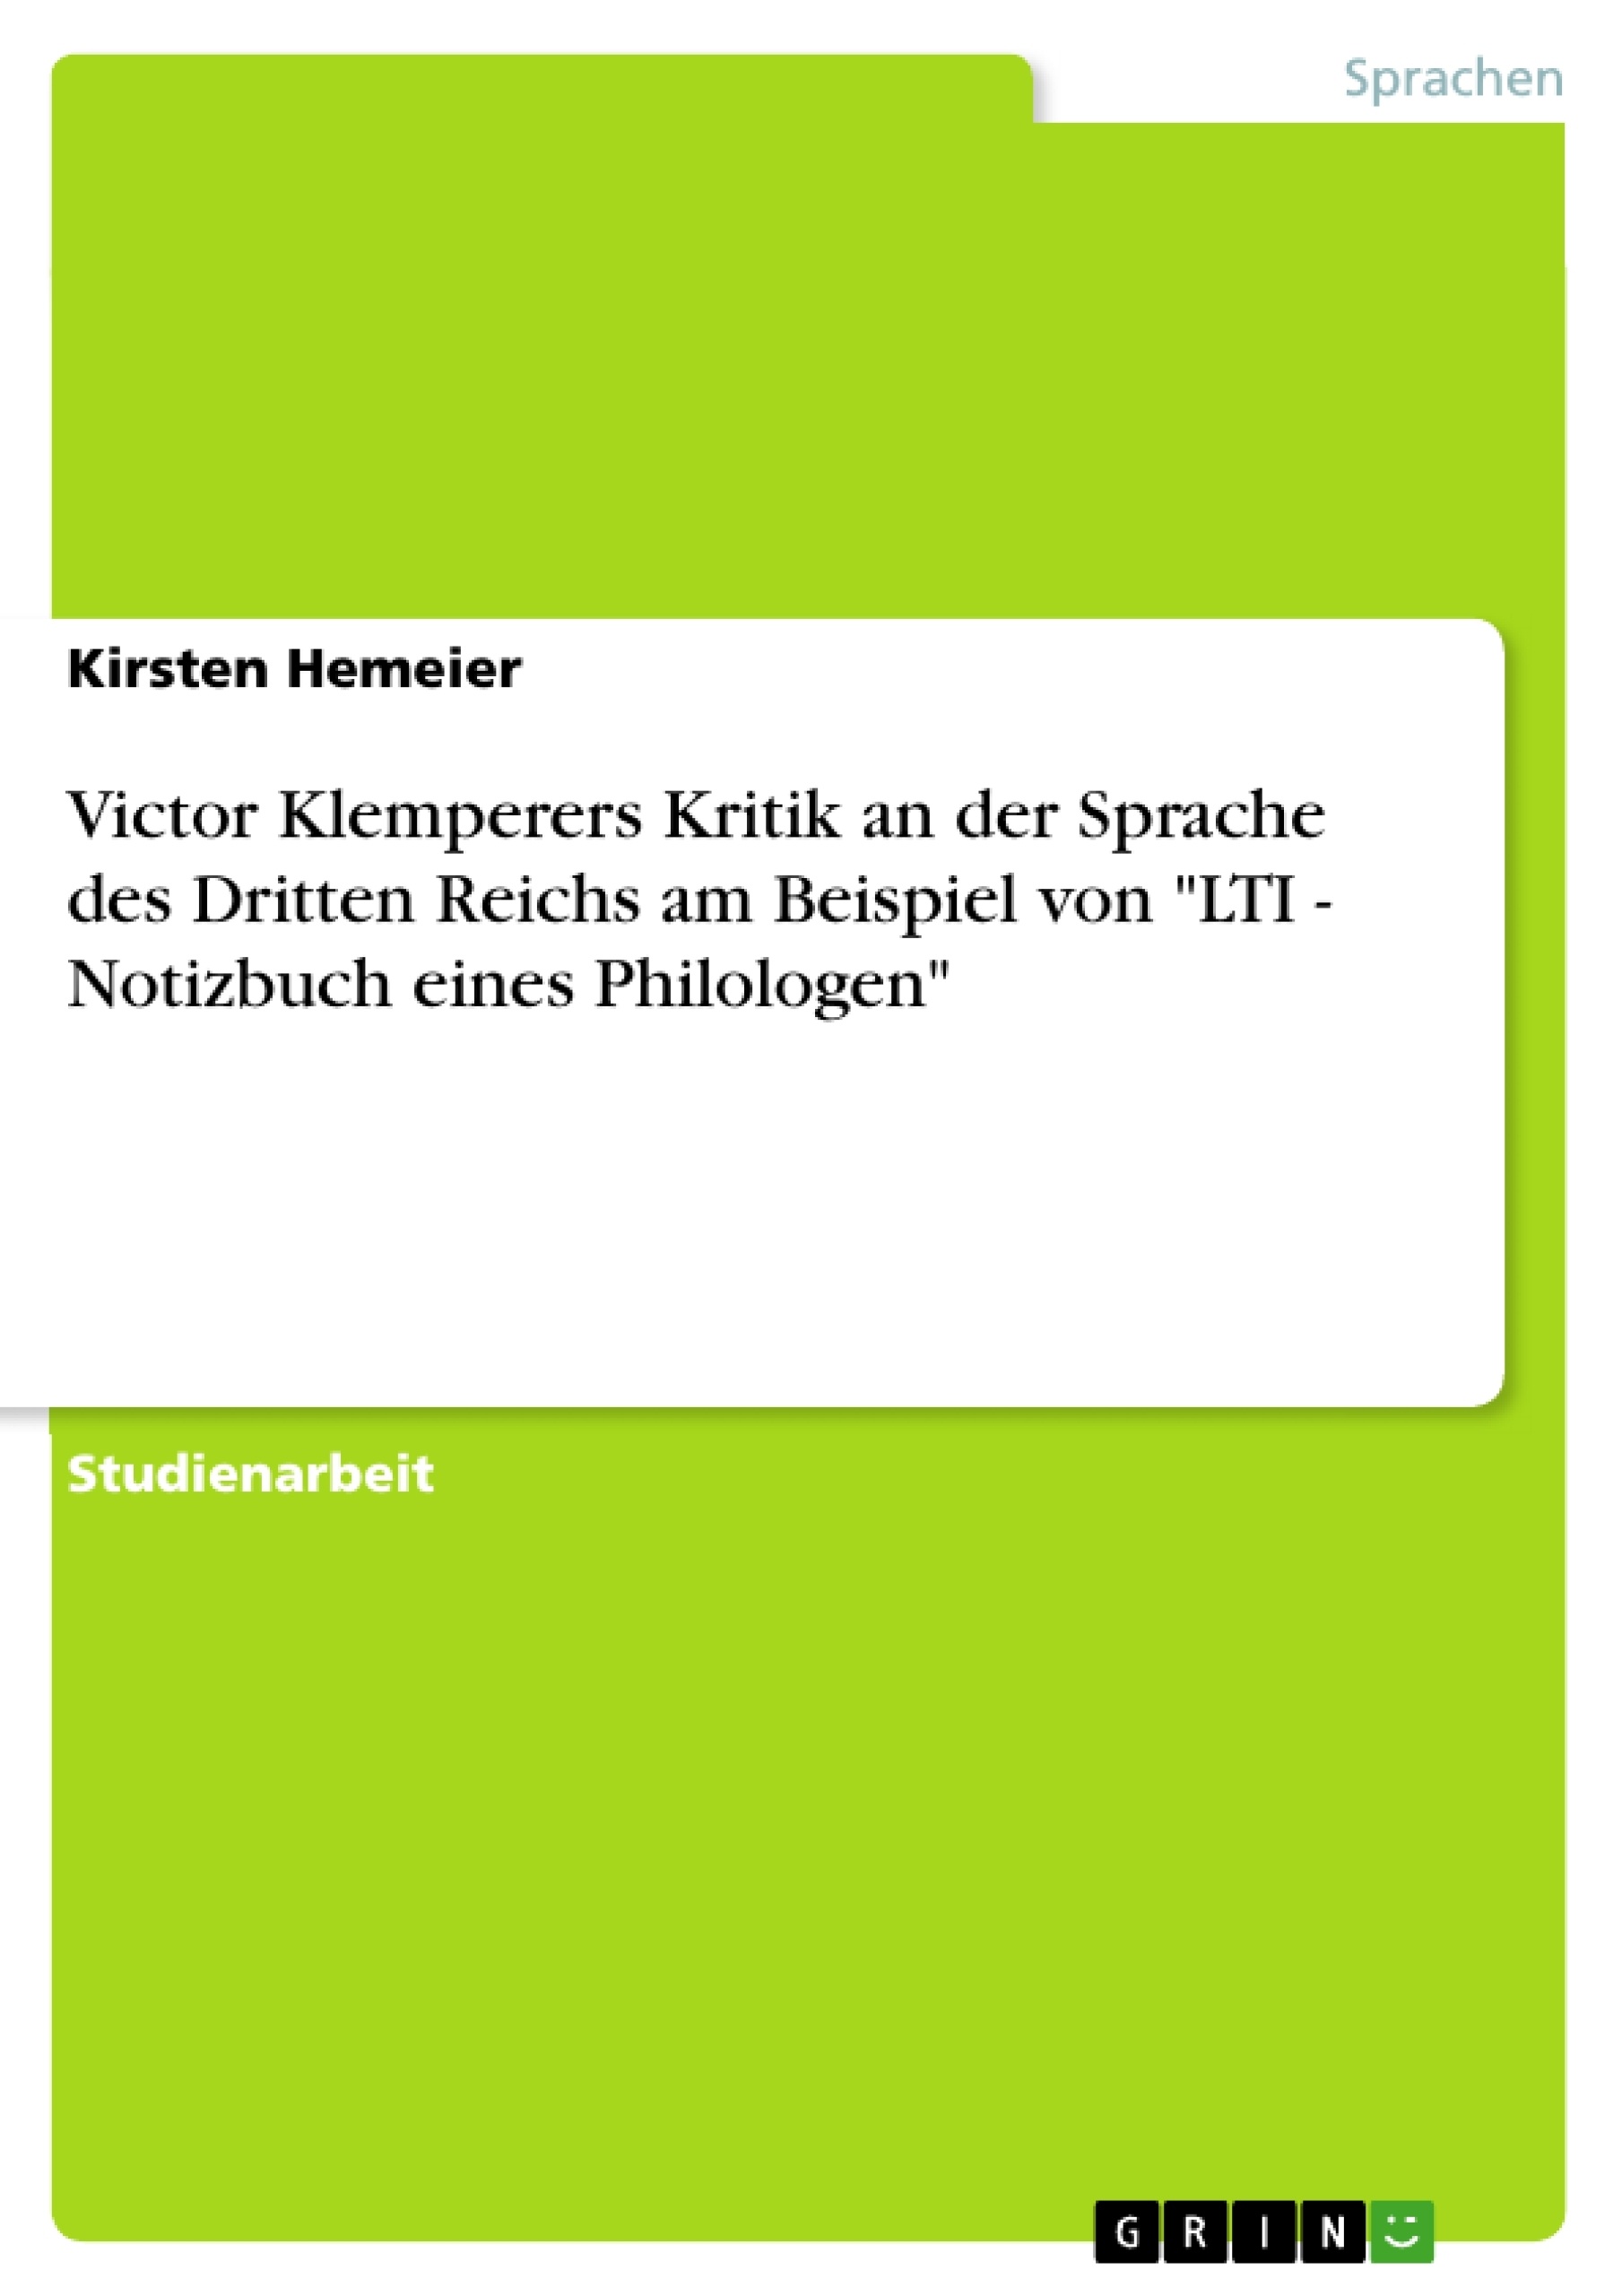 Title: Victor Klemperers Kritik an der Sprache des Dritten Reichs am Beispiel von  "LTI - Notizbuch eines Philologen"